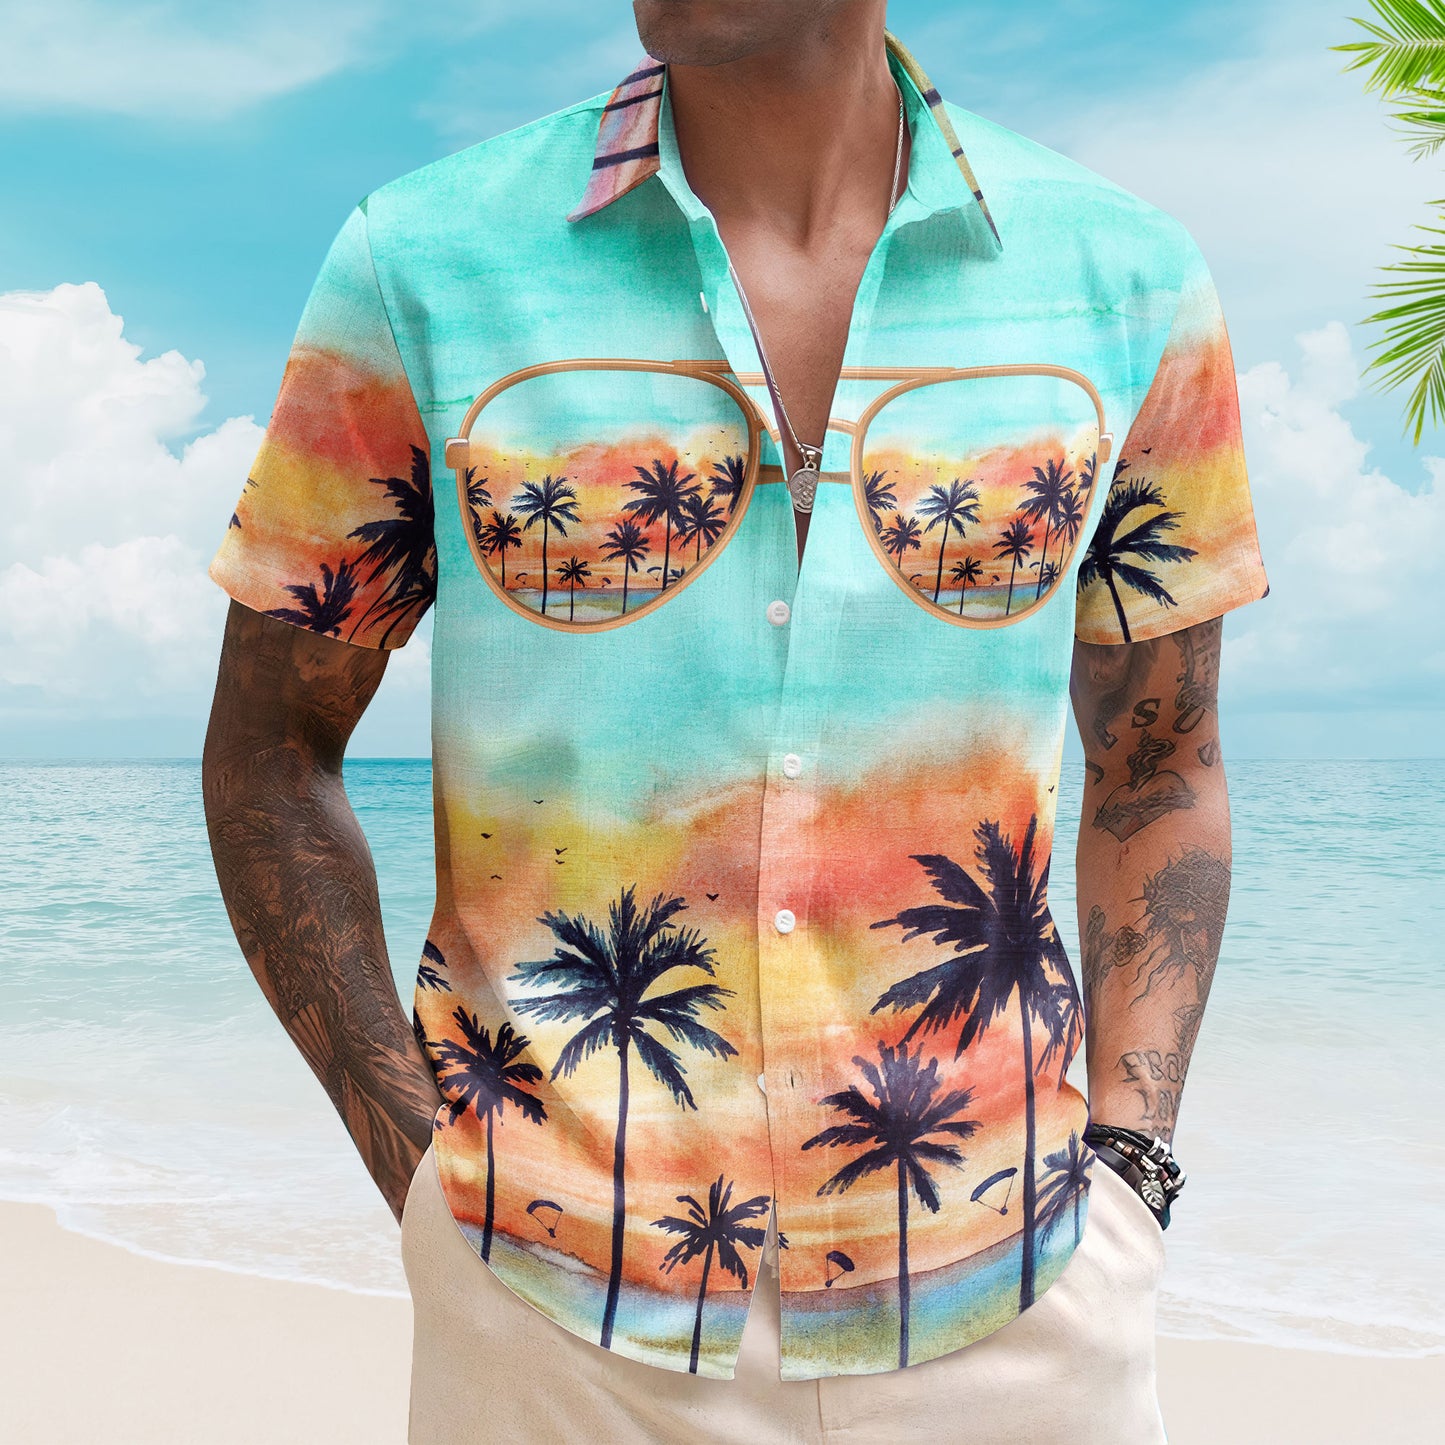 Family Trip Vacation - Personalized Hawaiian Shirt